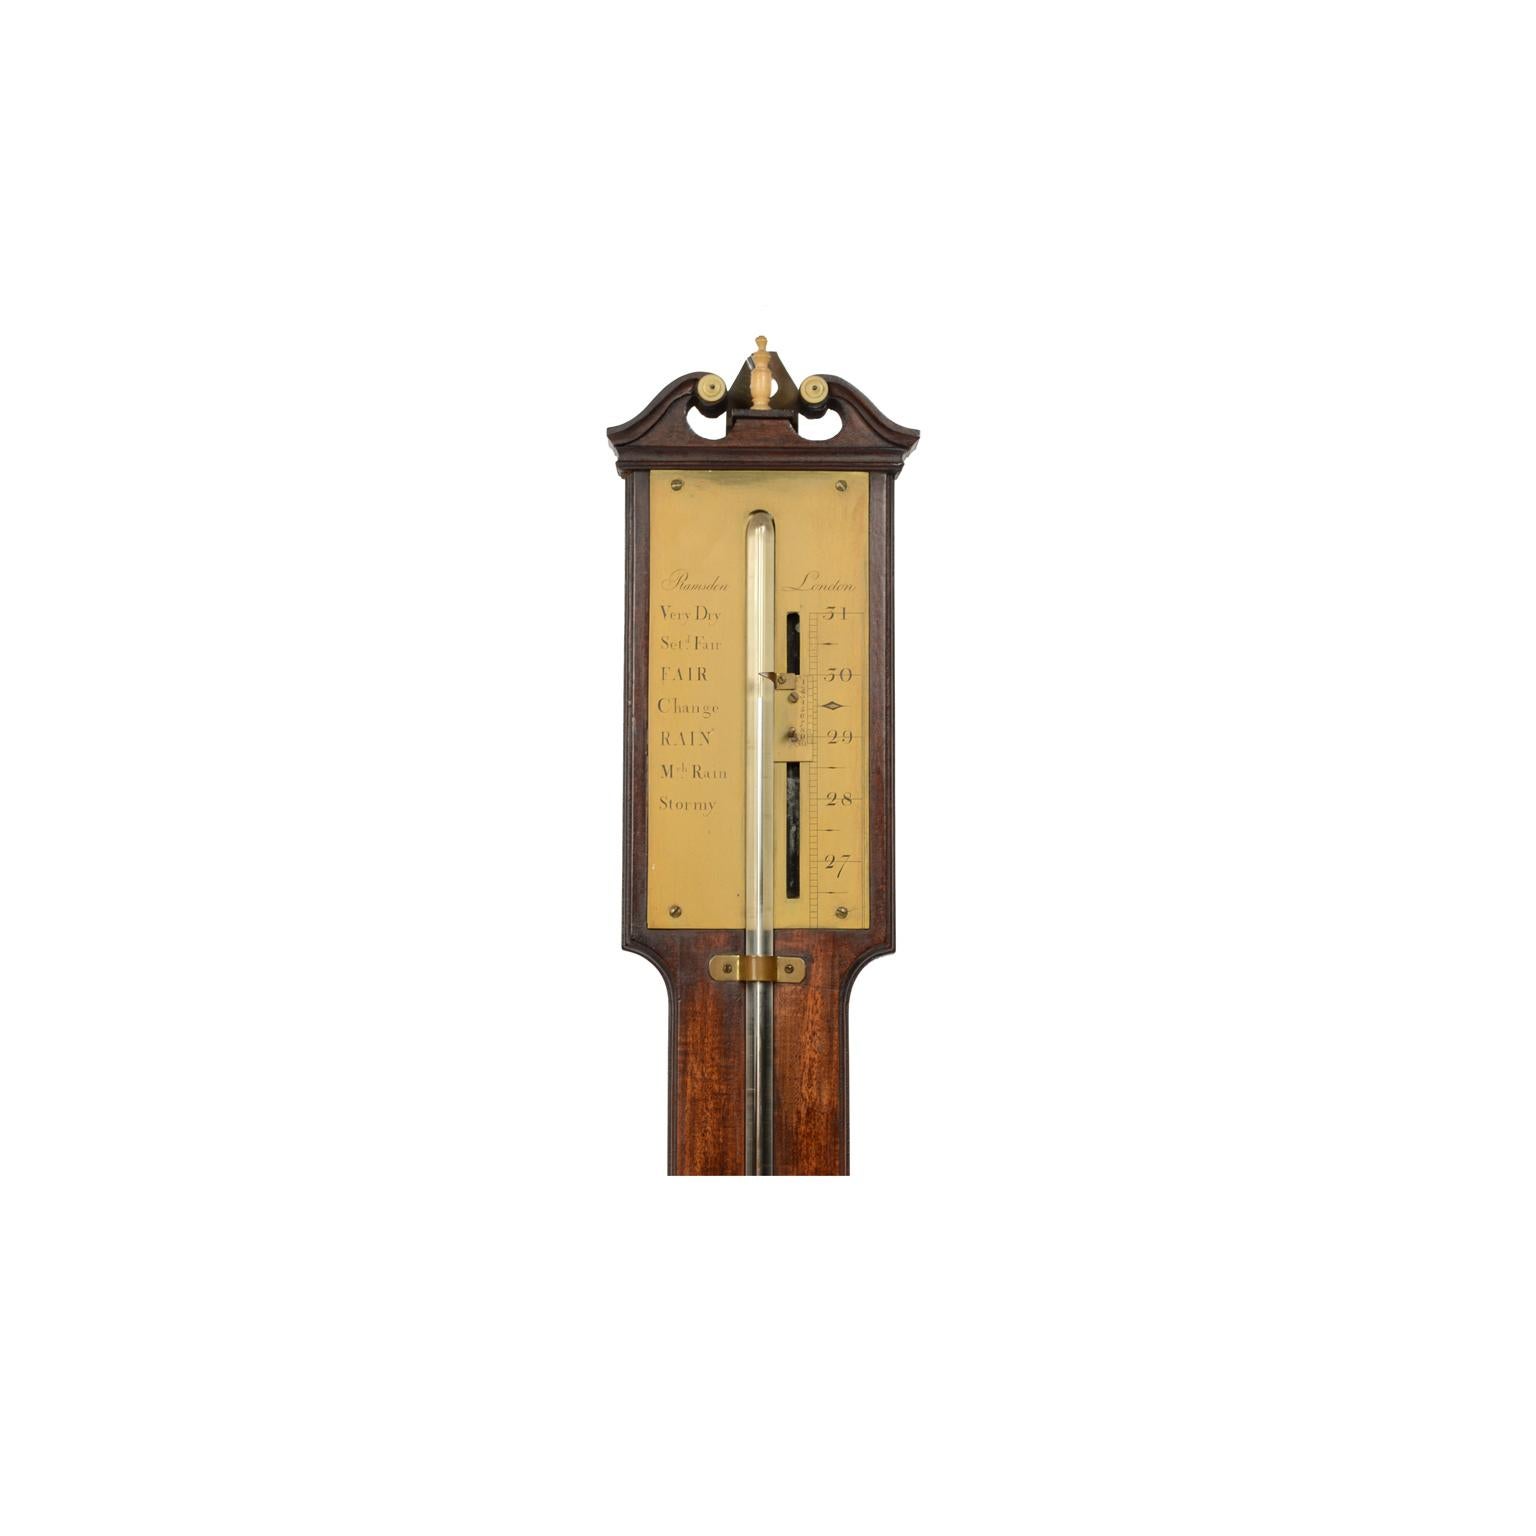 Stabbarometer auf einem Mahagonibrett mit Nonius zur Ablesung der Luftdruckschwankungen, signiert von Jess Ramsden, Ende des 18. Jahrhunderts. 
Sehr guter Zustand, voll funktionsfähig. Höhe 100 cm.
Zur Sicherheit während des Transports wird das